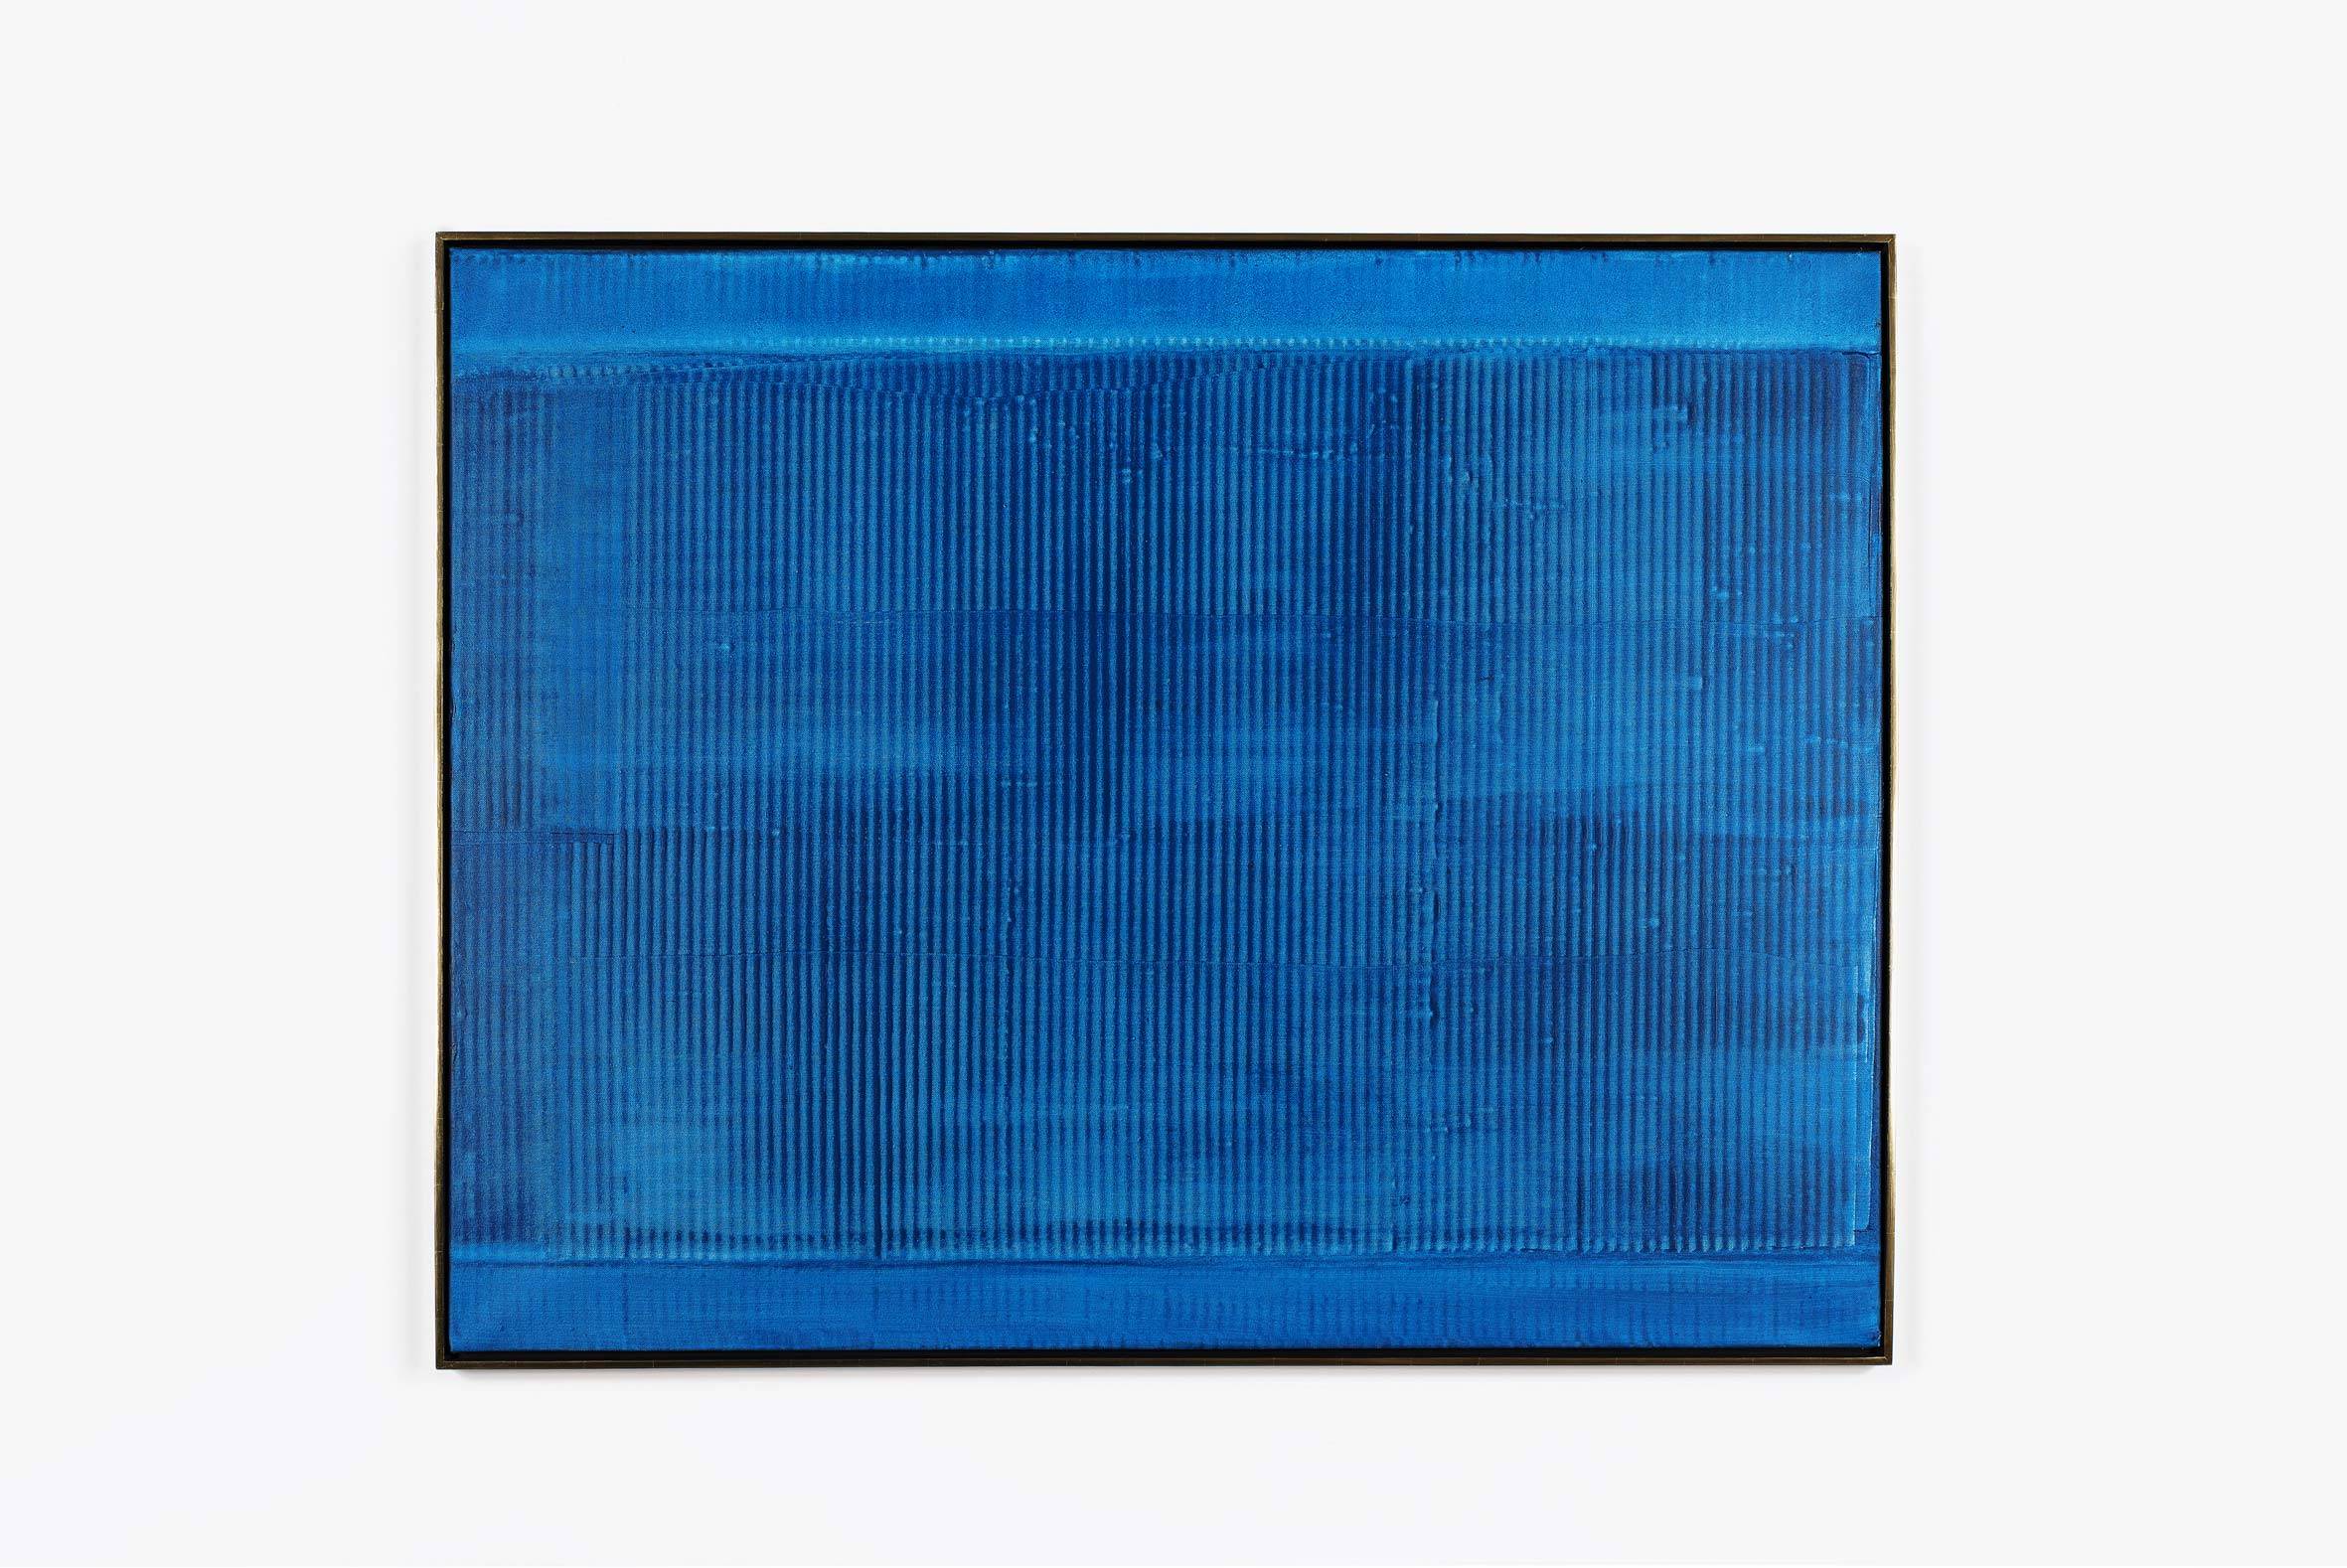 Heinz Mack, "Vibration im Blau" (1959), résine synthétique sur toile, 128 x 162 cm.  Photo : Pierre Antoine © Heinz Mack/ADAGP, Paris, 2016 Courtesy Galerie Perrotin